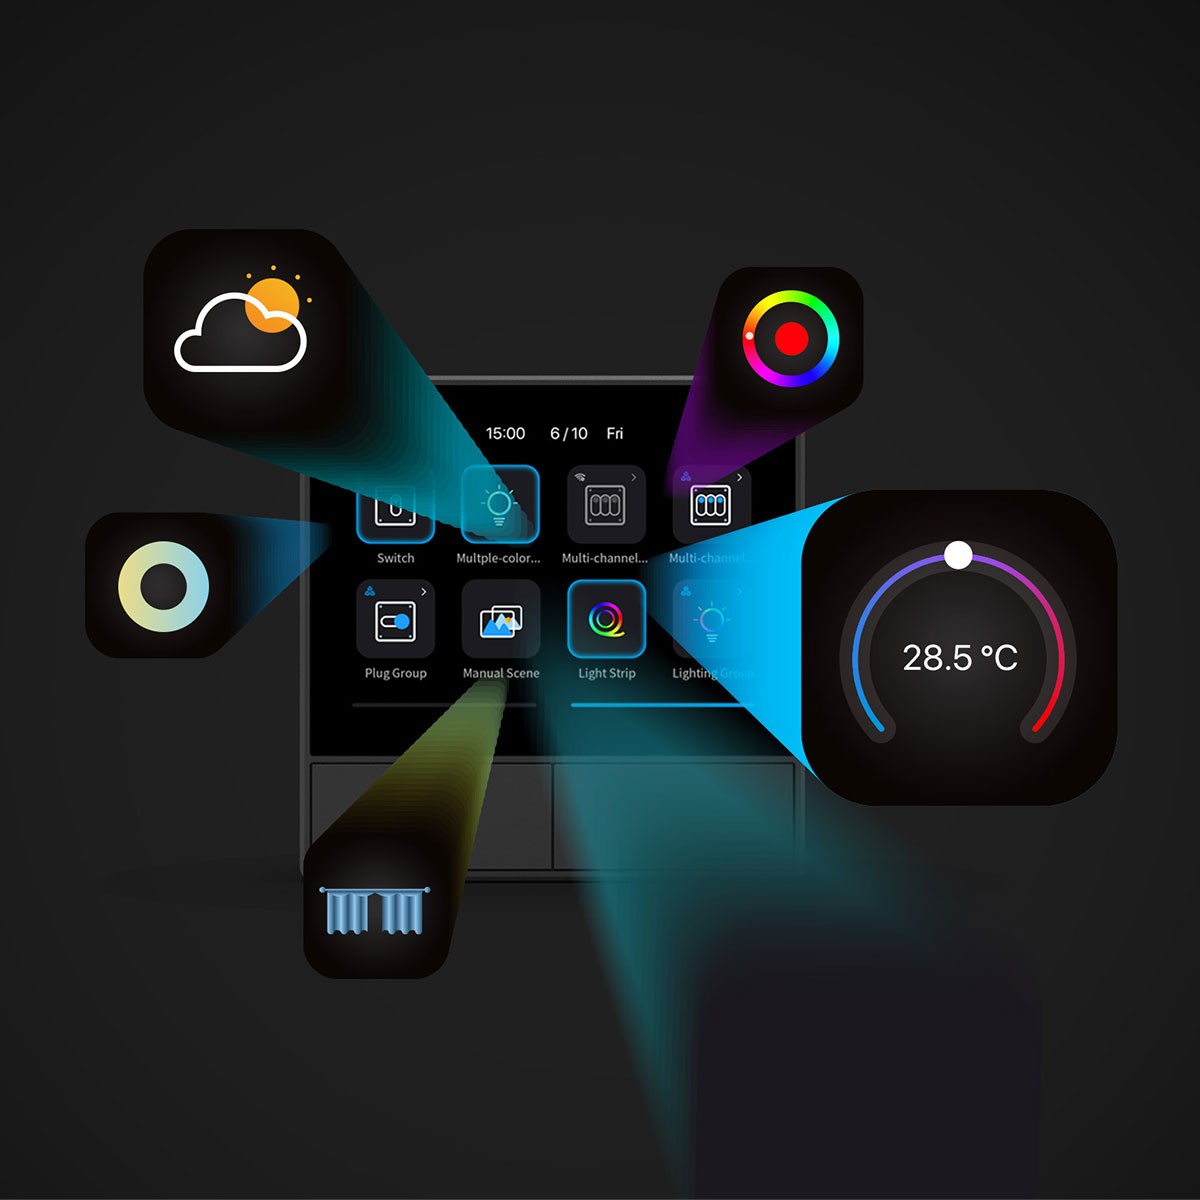 Sonoff NSPanel Ecrã Multifunções Inteligente wifi preto: Cria cenas personalizadas para diferentes ambientes